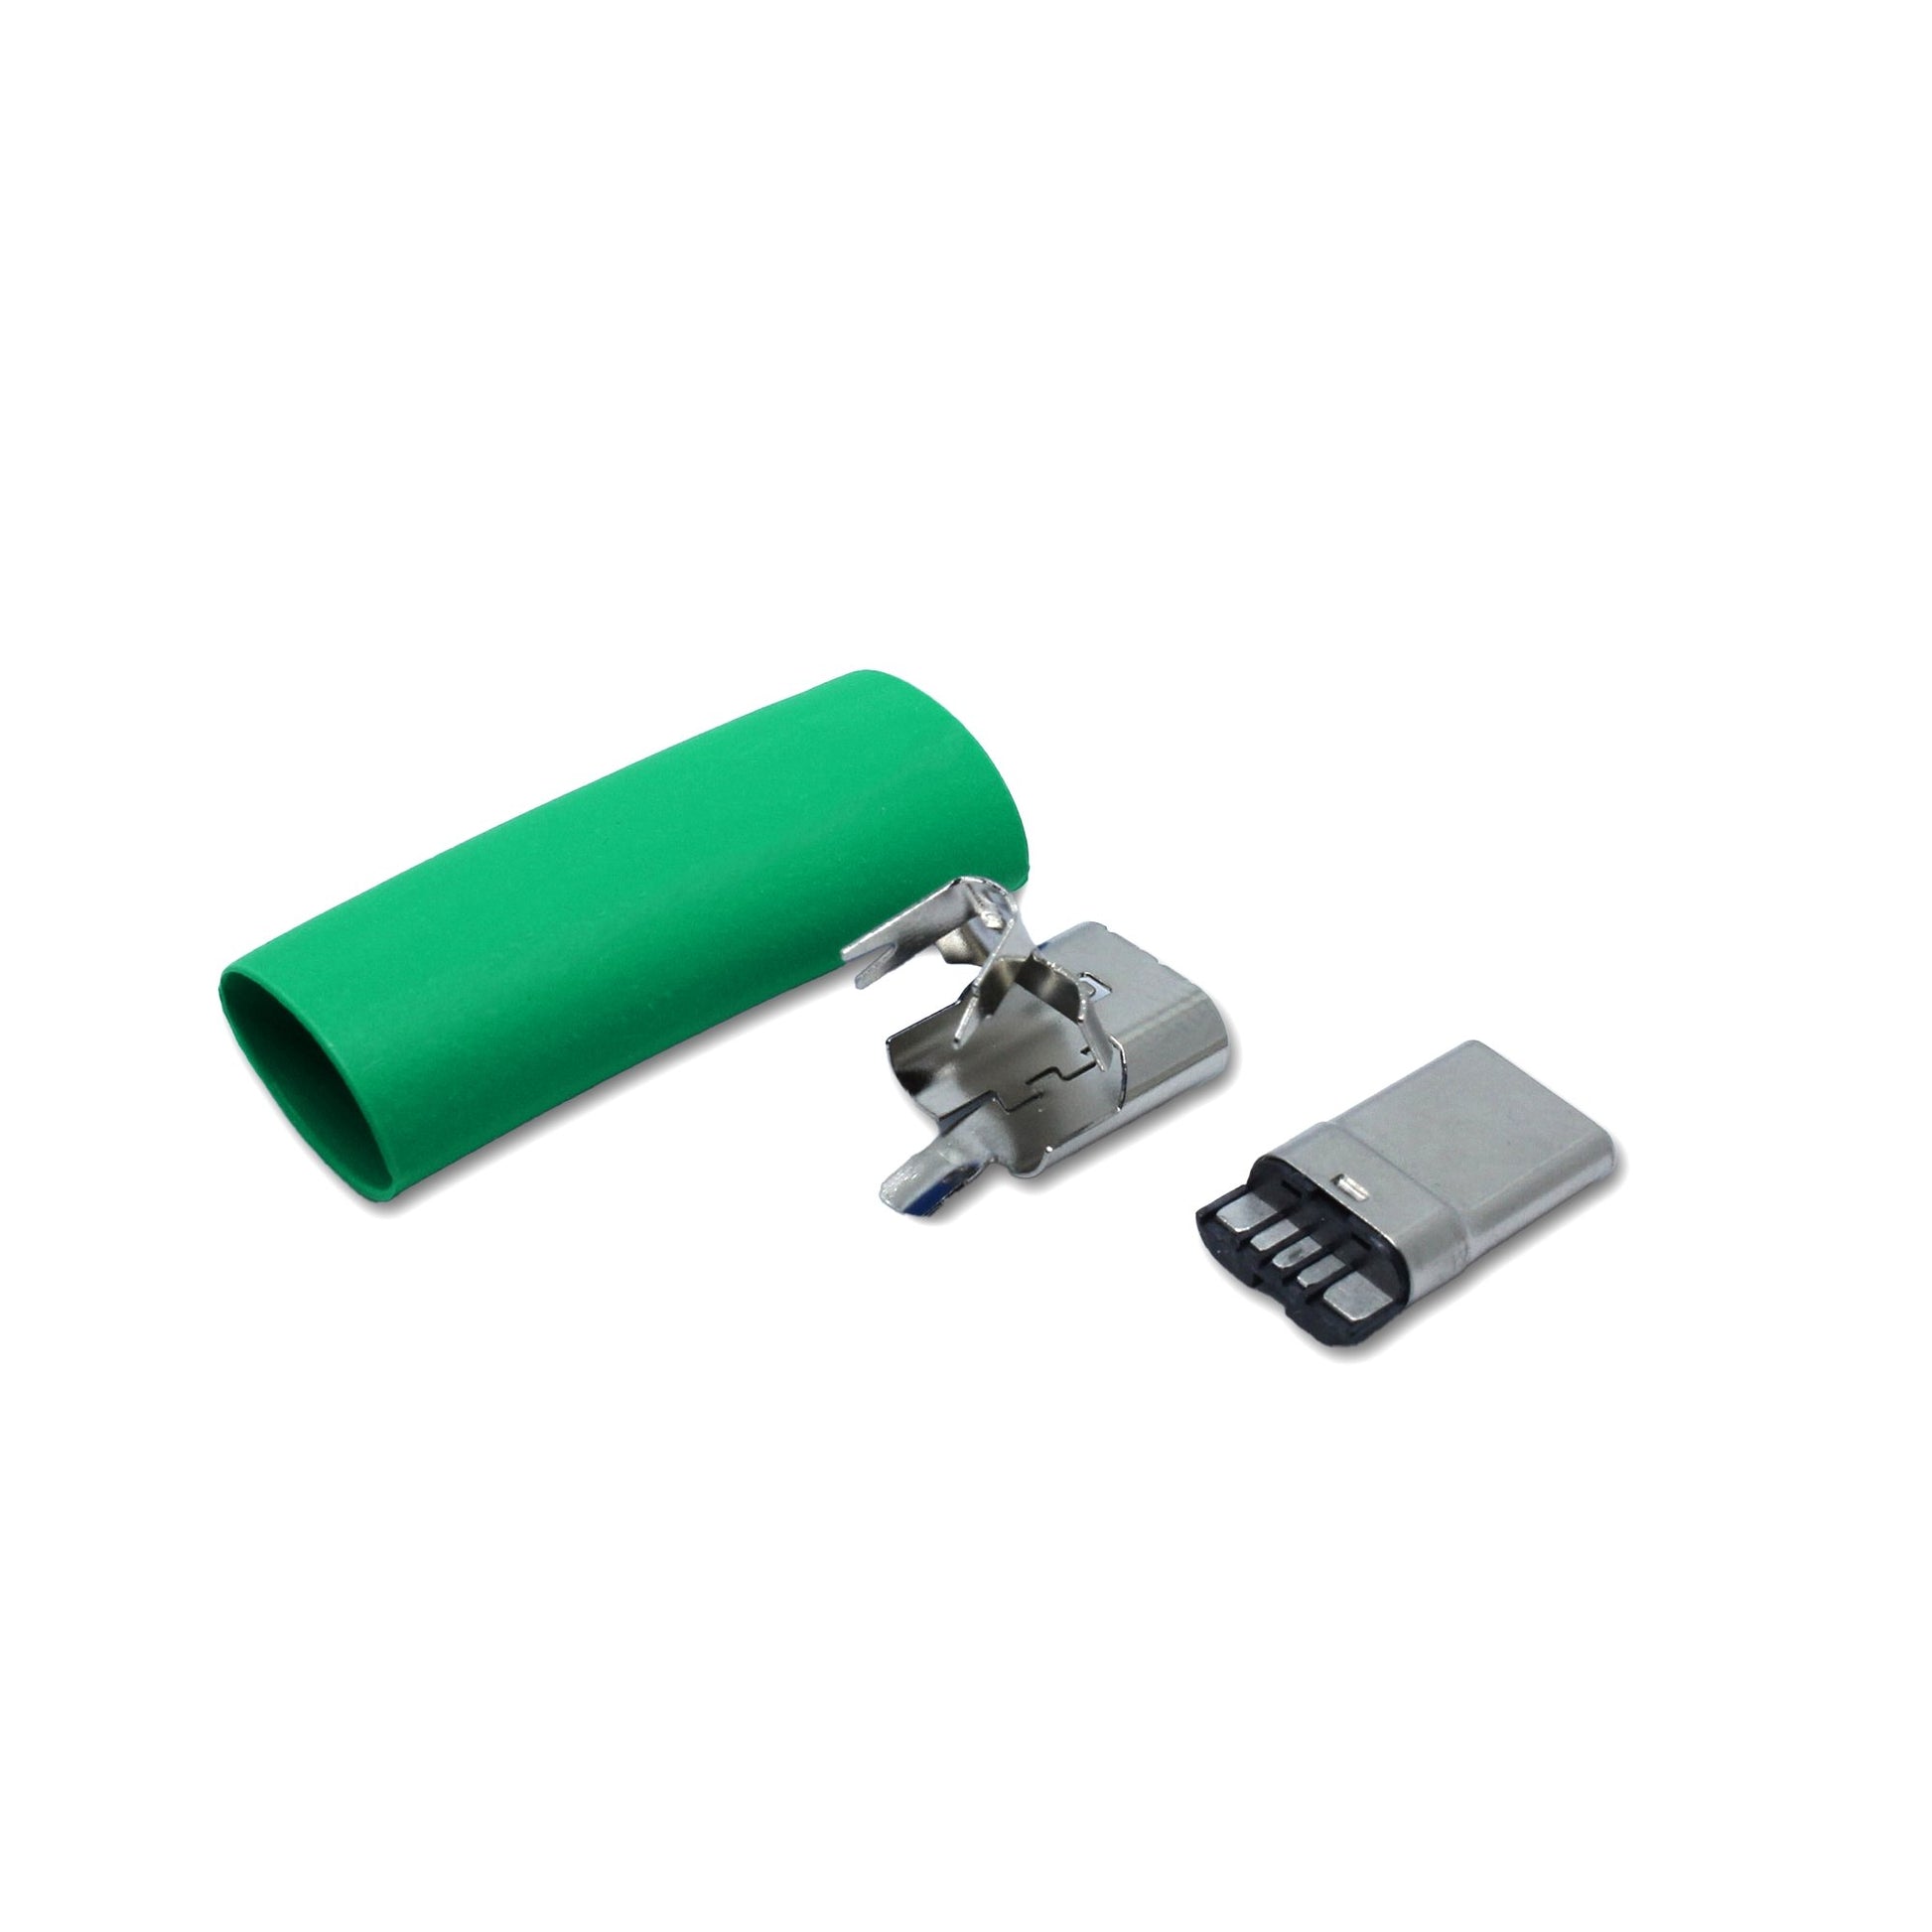 Einzelteile USB-Typ-C-Steckers in grün, Ersatzteil für ein USB 2.0 Kabel  Alt-Text bearbeiten